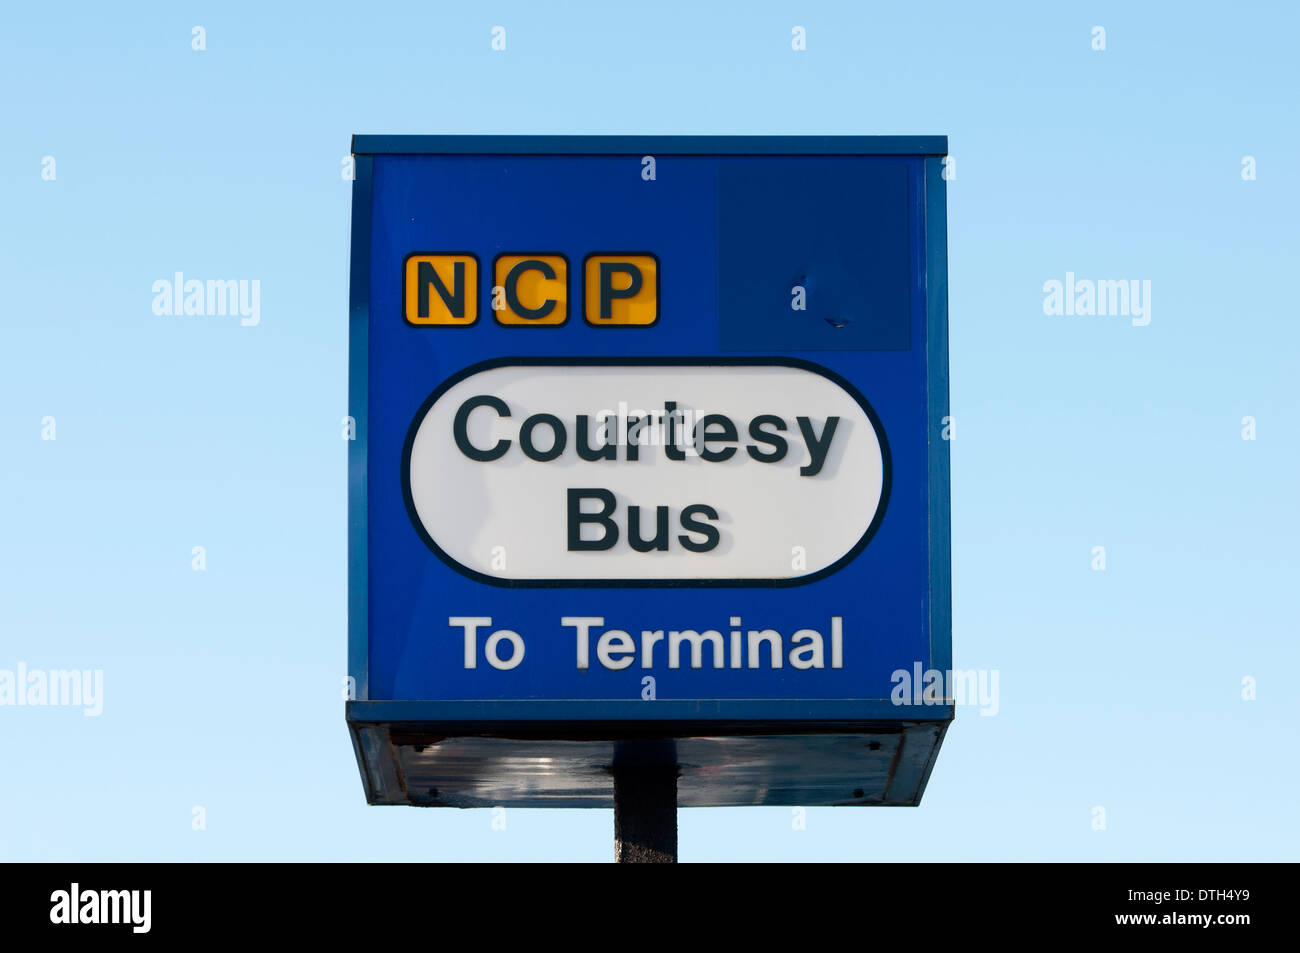 Autobus de courtoisie du PLCN signe, l'aéroport de Birmingham, UK Banque D'Images